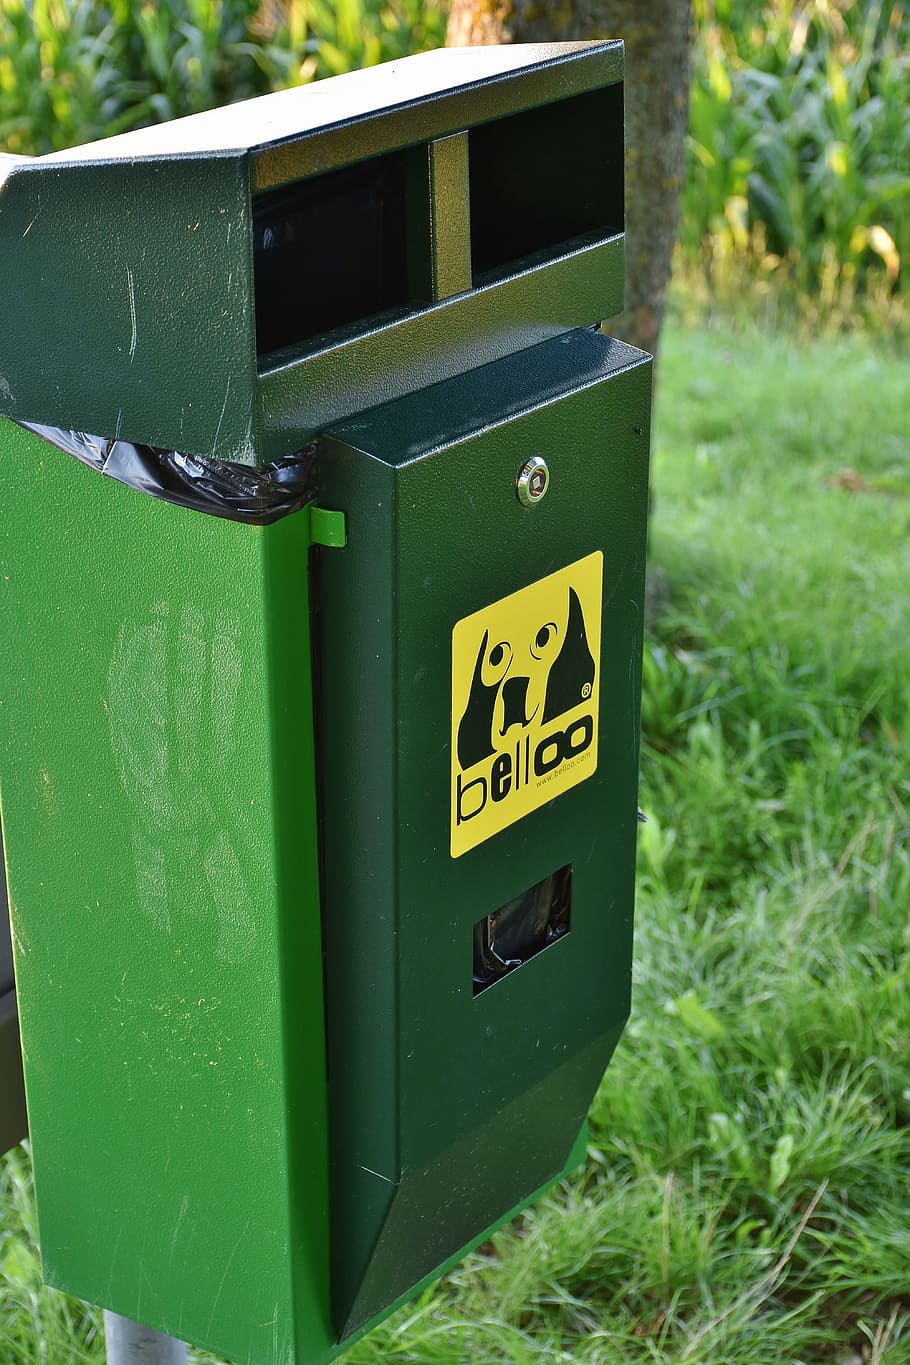 green, belloo trash bin, dog feces, dog, kot, waste, garbage, disposal, environment, garbage can